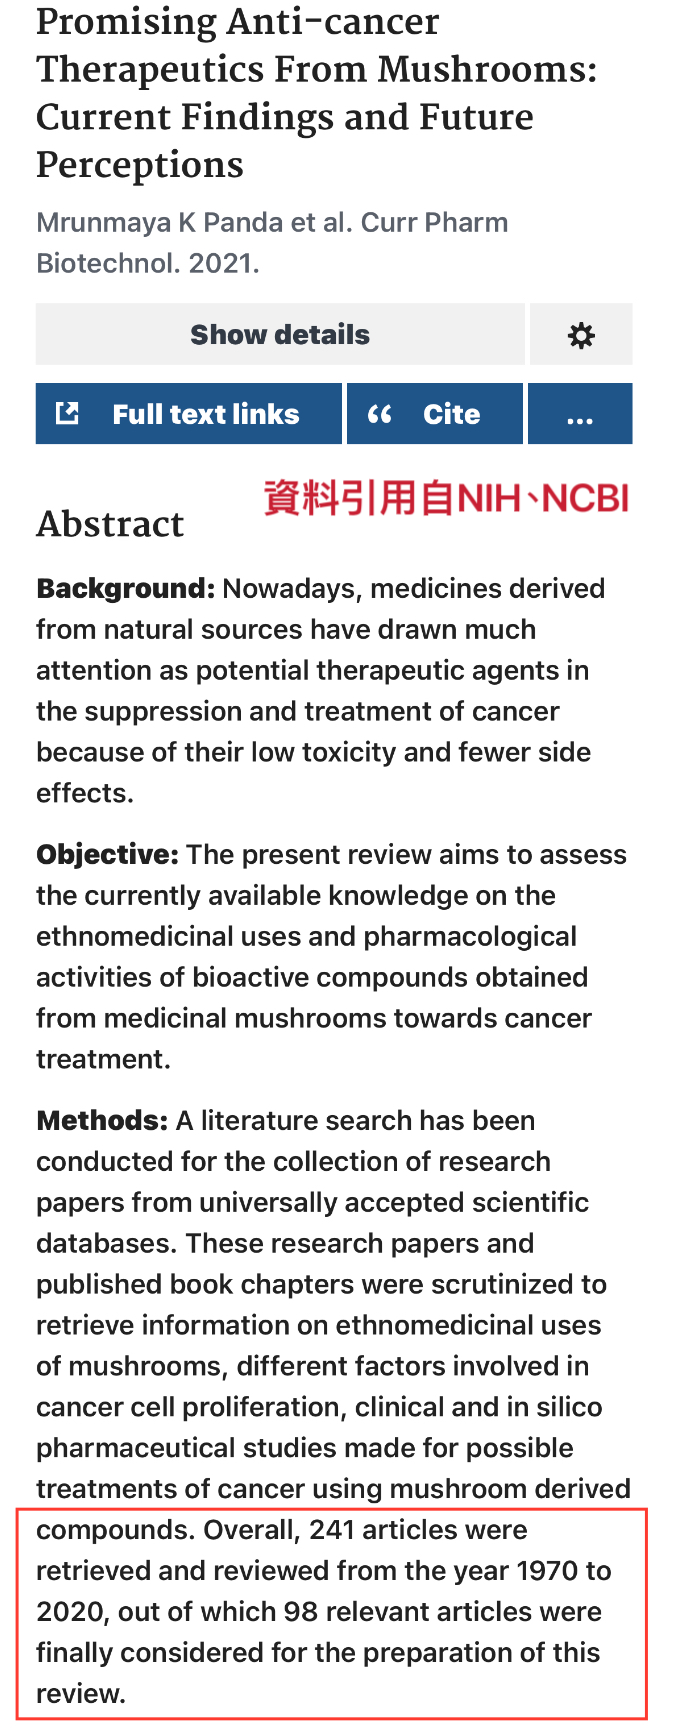 廣泛的研究文獻對於蘑菇抗癌療法表示驚艷